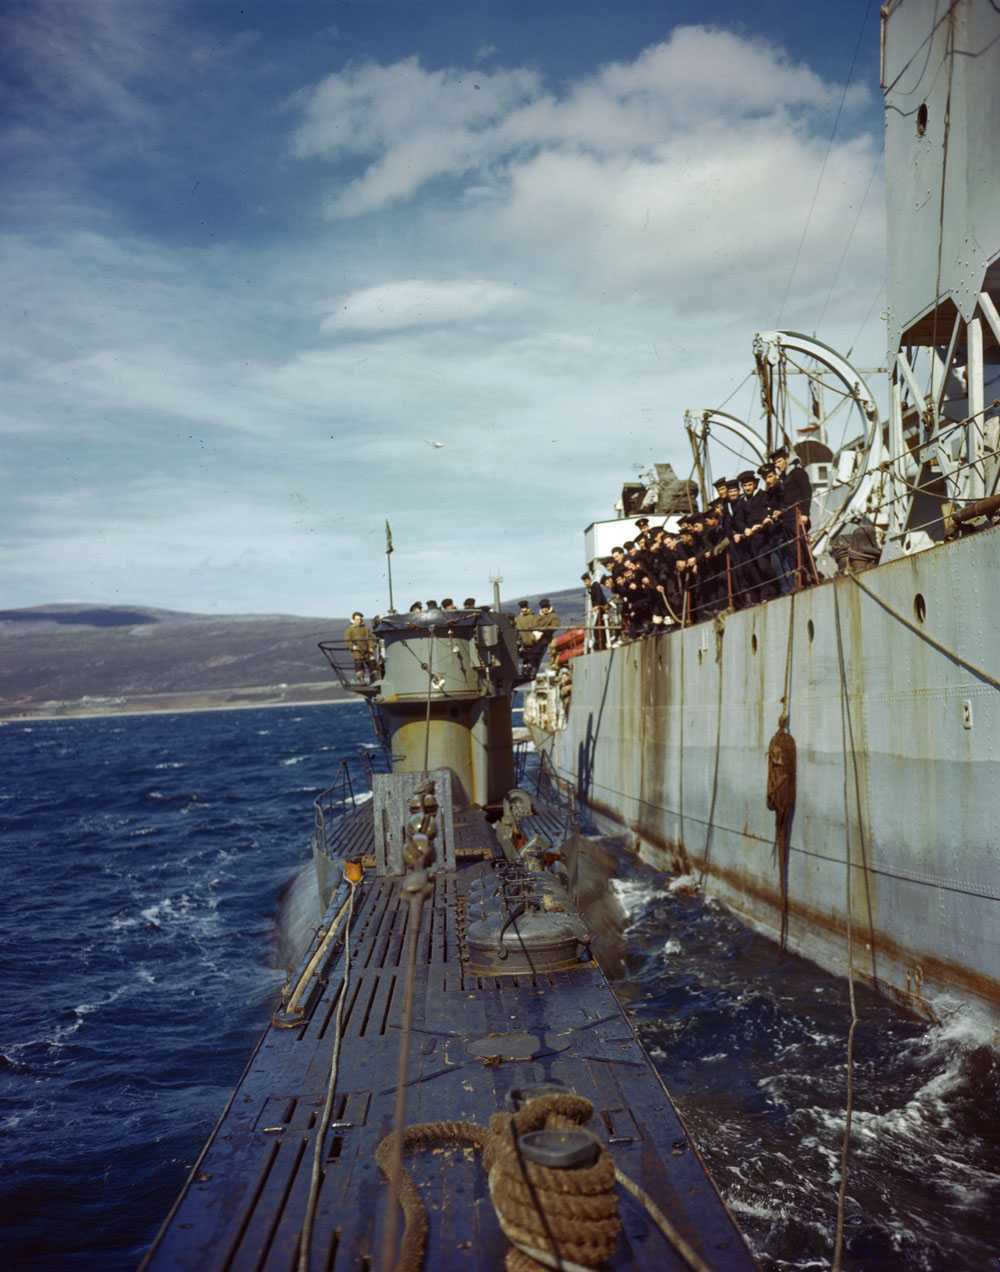 Image en couleur – On aperçoit le bord d’un immense navire, où des marins canadiens s’appuient sur la rambarde. Un sous-marin émergeant à peine de l’eau est fixé au navire au moyen de cordes; des militaires allemands se trouvent dessus.